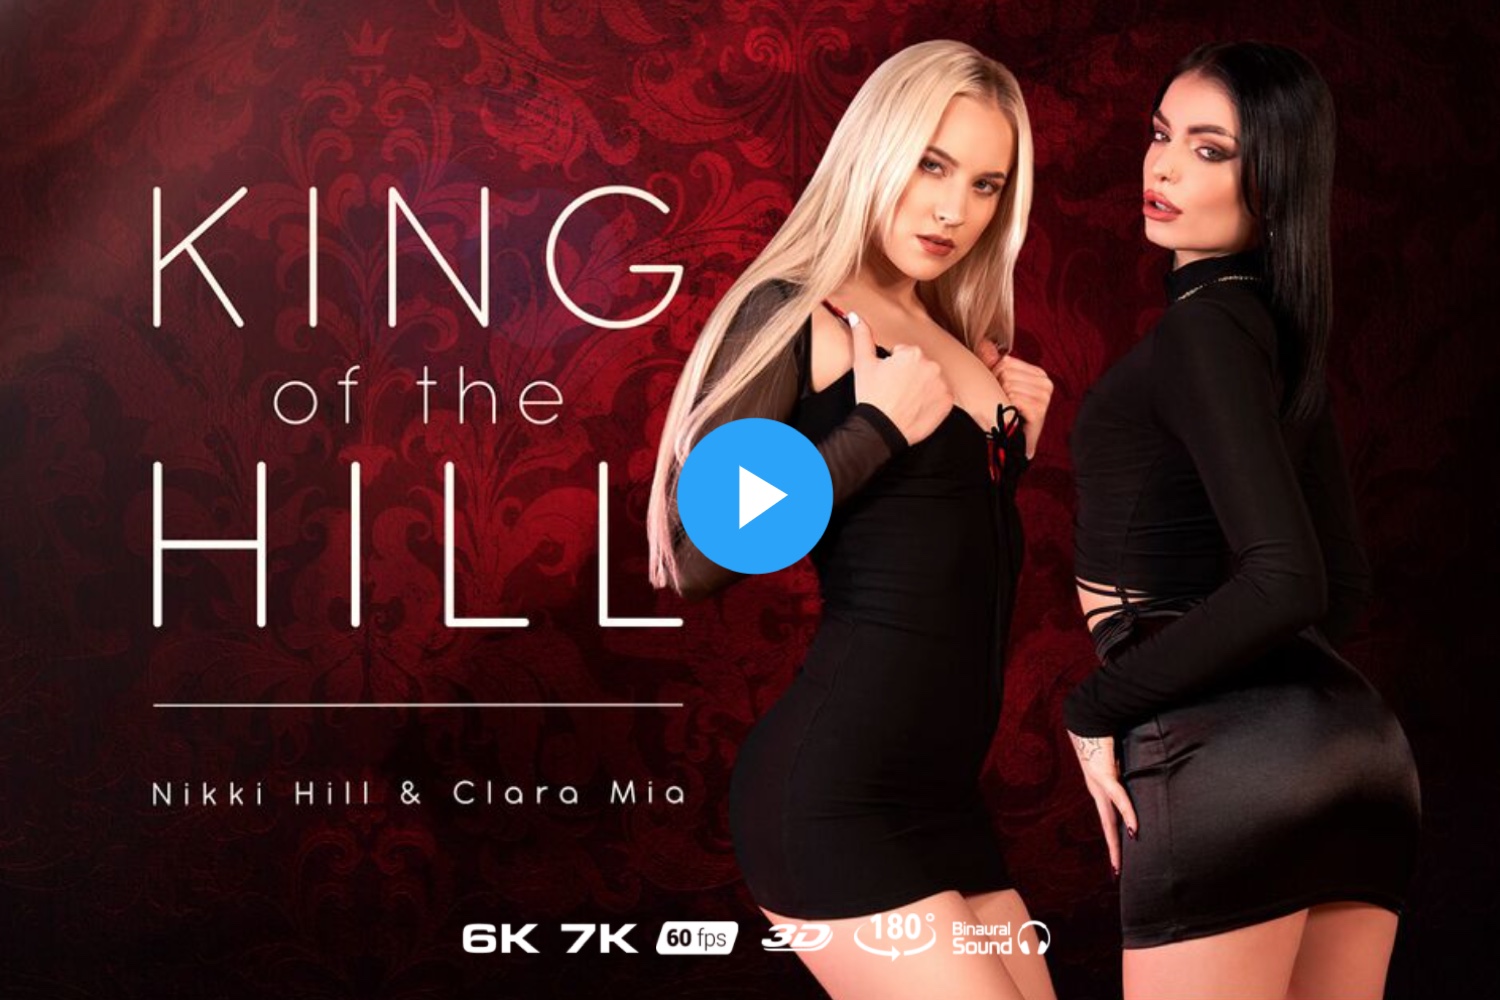 King of the Hill - Clara Mia VR Porn - Clara Mia Virtual Reality Porn - Nikki Hill VR Porn - Nikki Hill Virtual Reality Porn